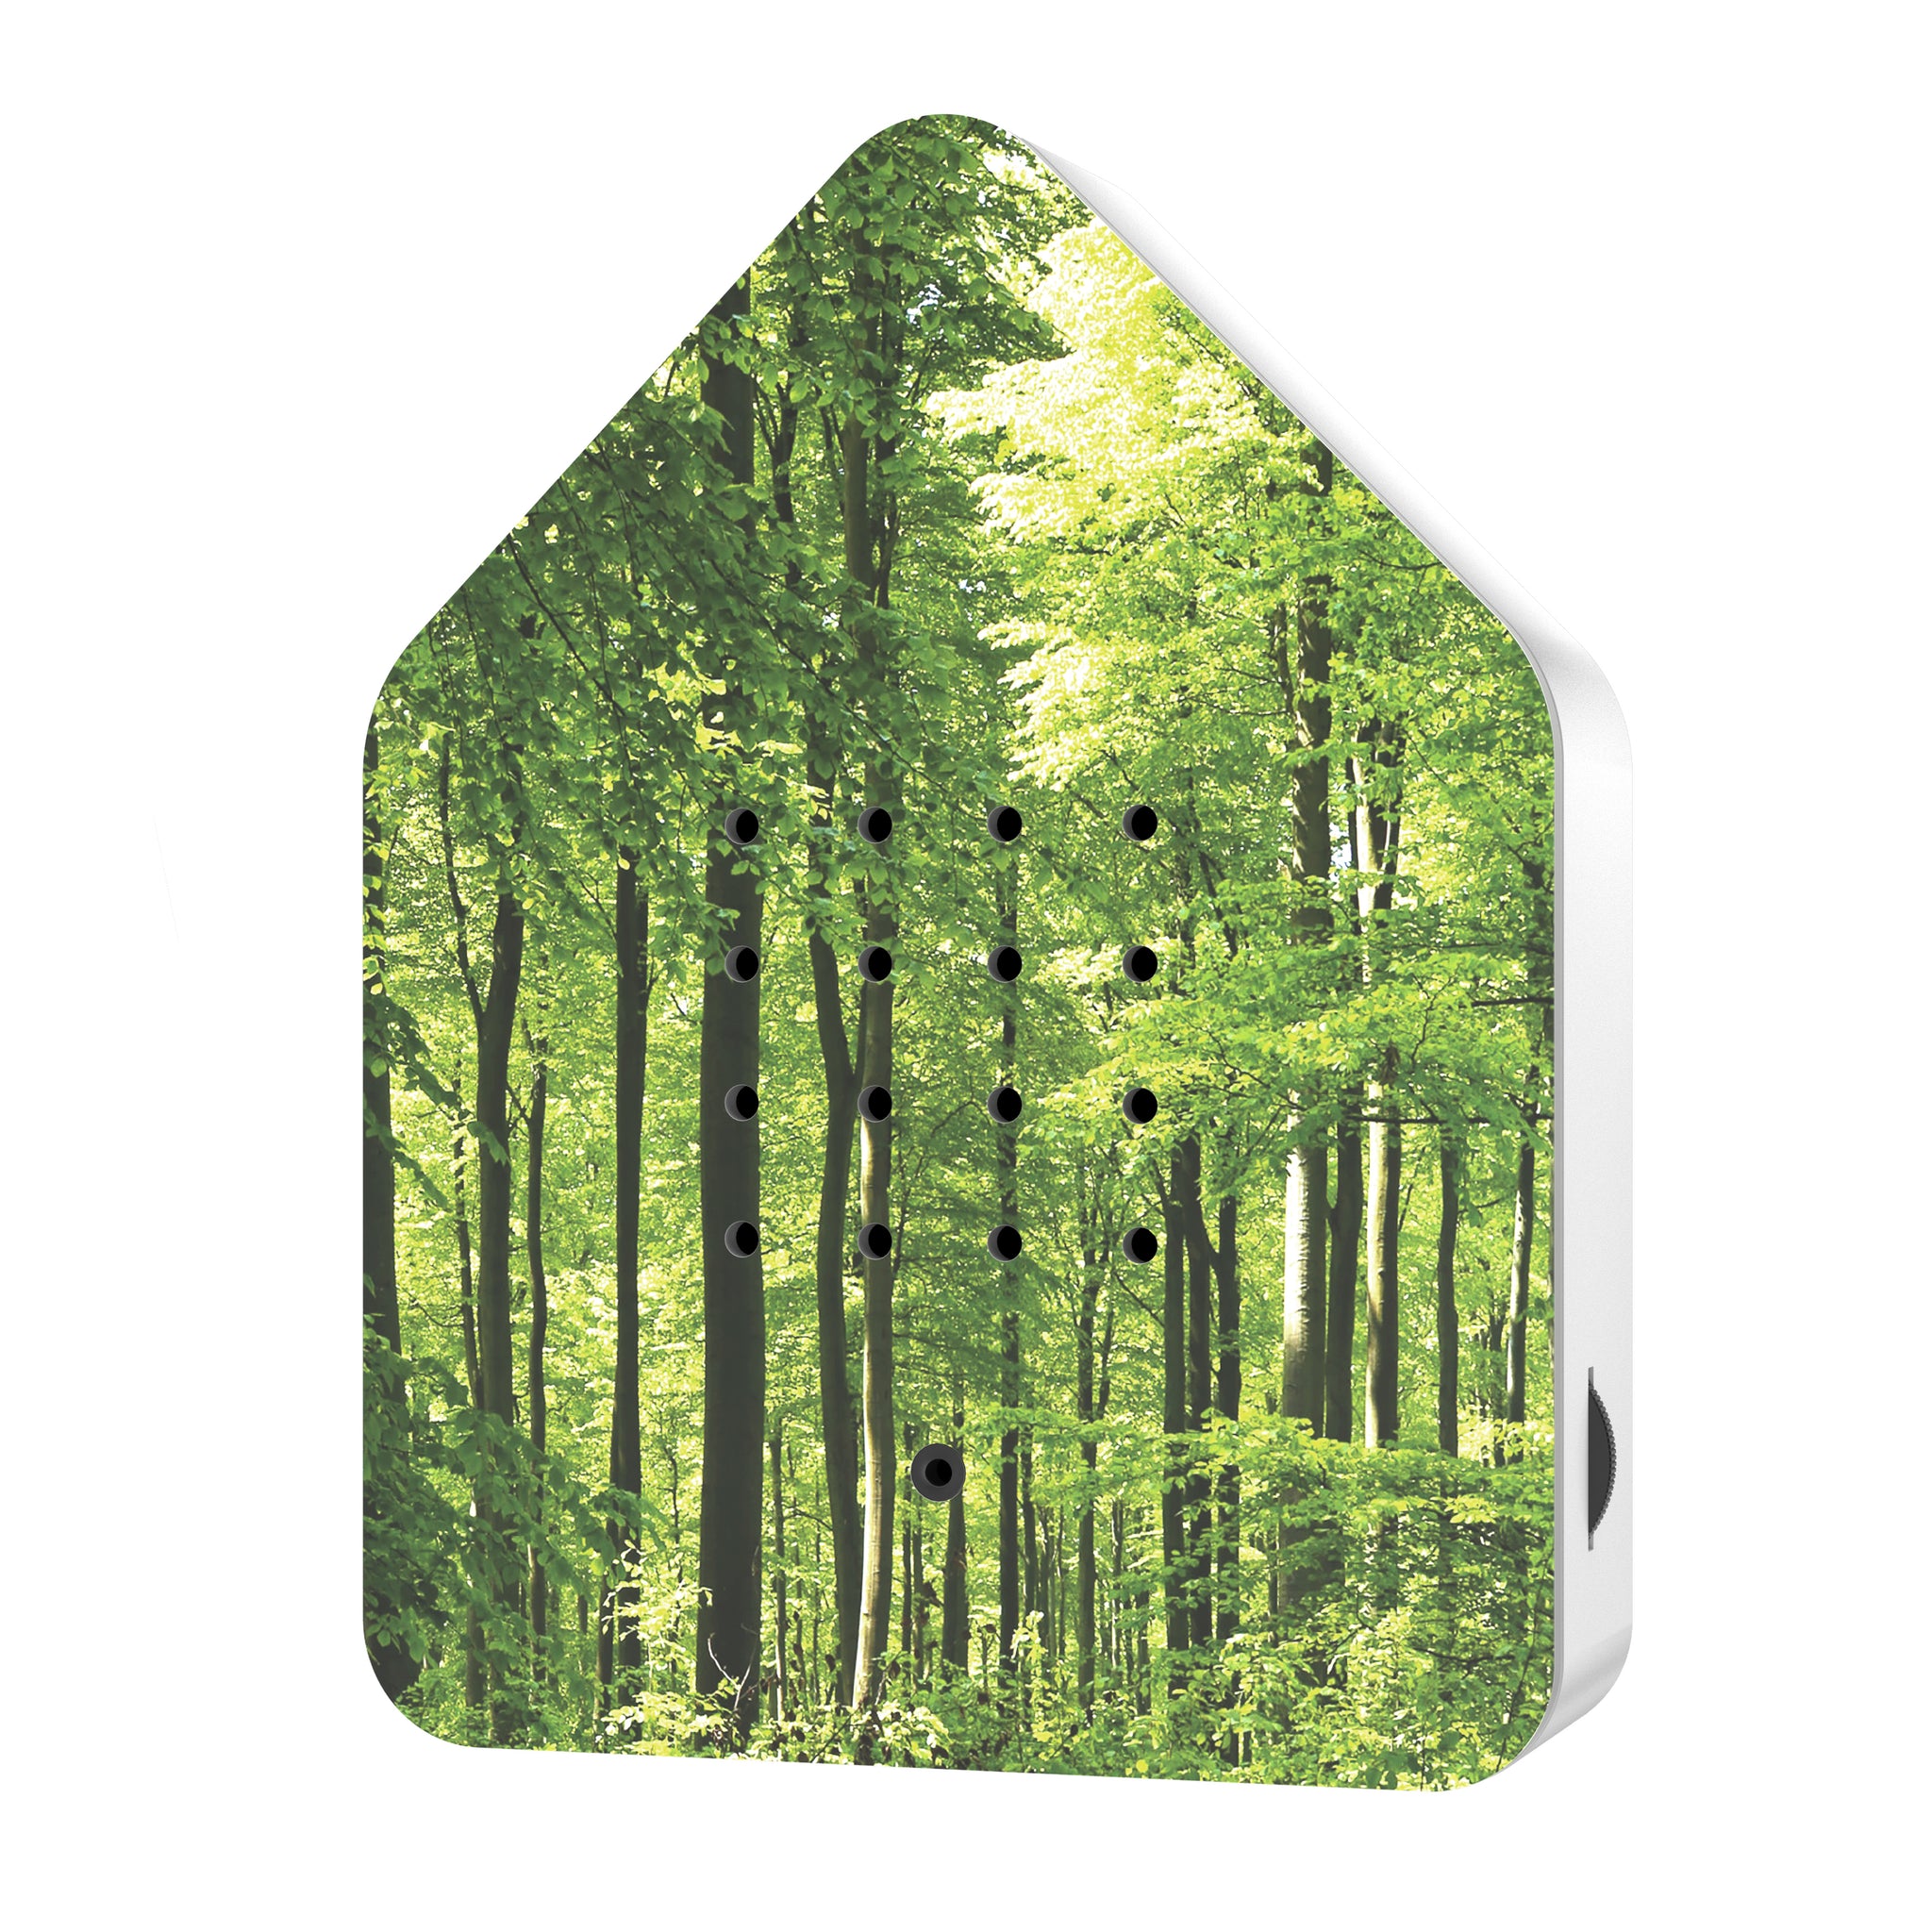 Zwitscherbox Classic Forest Huisje met Vogelgeluiden│Relaxound│art. 11ZBX0701004│Voorkant met witte achtergrond